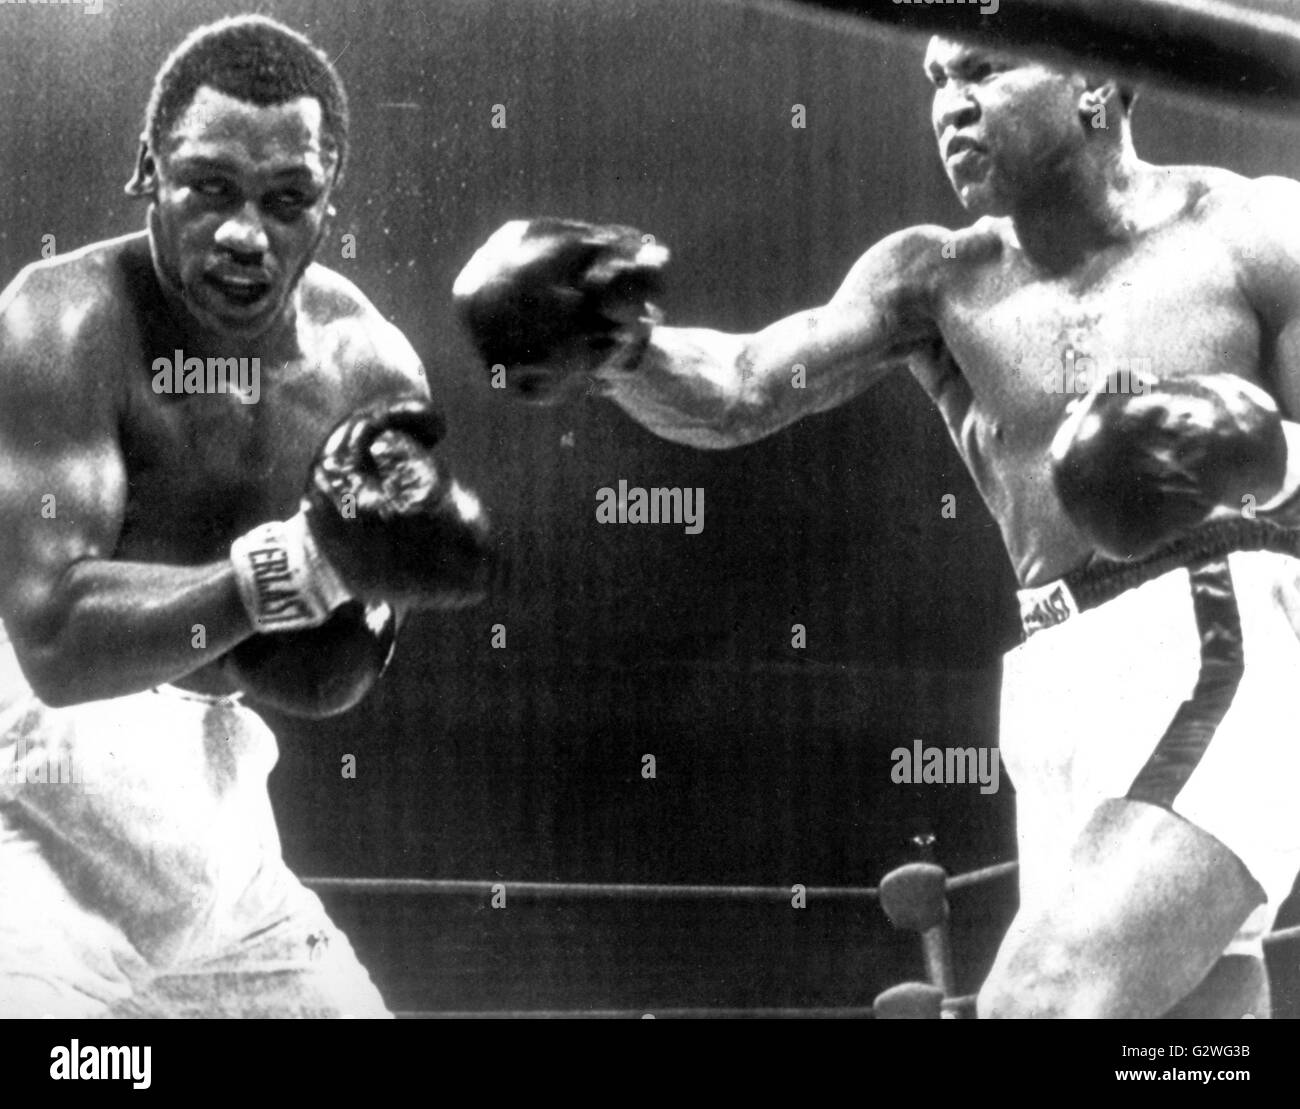 FILE - un file immagine datata 29 gennaio 1974 ci mostra a heavyweight boxer Muhammad Ali (R) e il suo avversario Joe Frazier (L) in azione durante il loro bout al Madison Square Garden di New York, Stati Uniti d'America. Nato Cassio argilla, boxe leggenda Muhammad Ali, soprannominato 'il più grande, ' morì il 03 giugno 2016 a Phoenix, Arizona, Stati Uniti d'America, all'età di 74, una famiglia portavoce ha detto. Foto: dpa Foto Stock